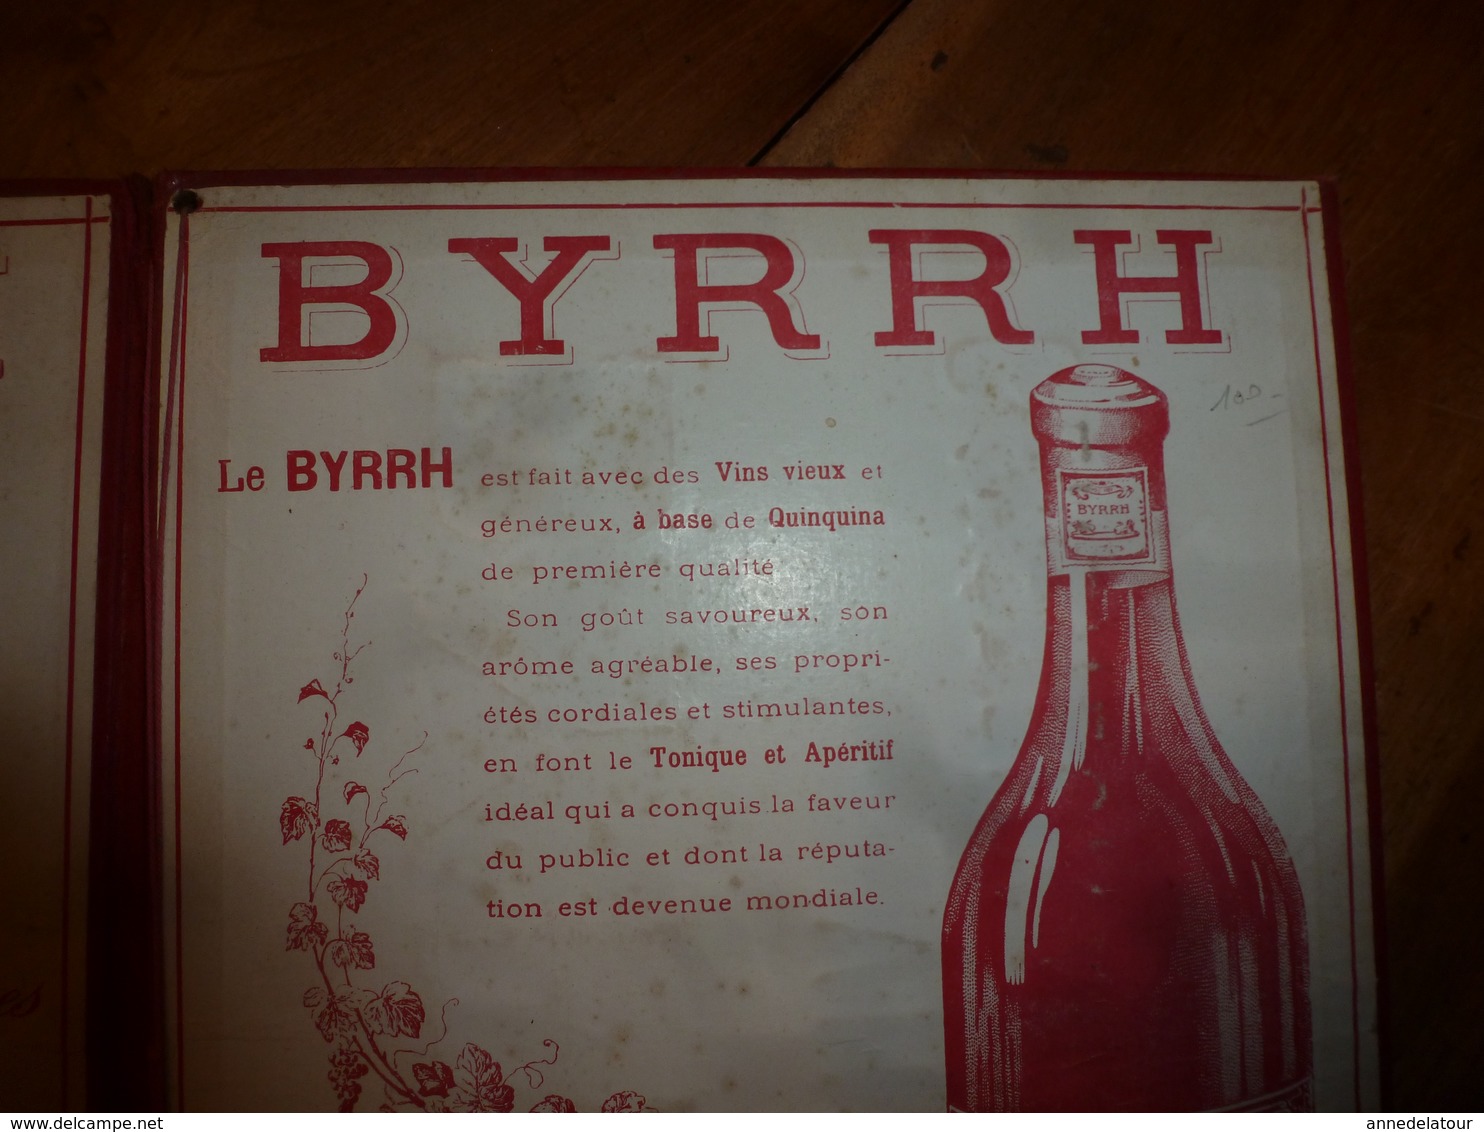 Classeur pour menus BYRRH Vin généreux au Quinquina - Maison L. VIOLET Frères à THUIR (Pyrénées Orientales)